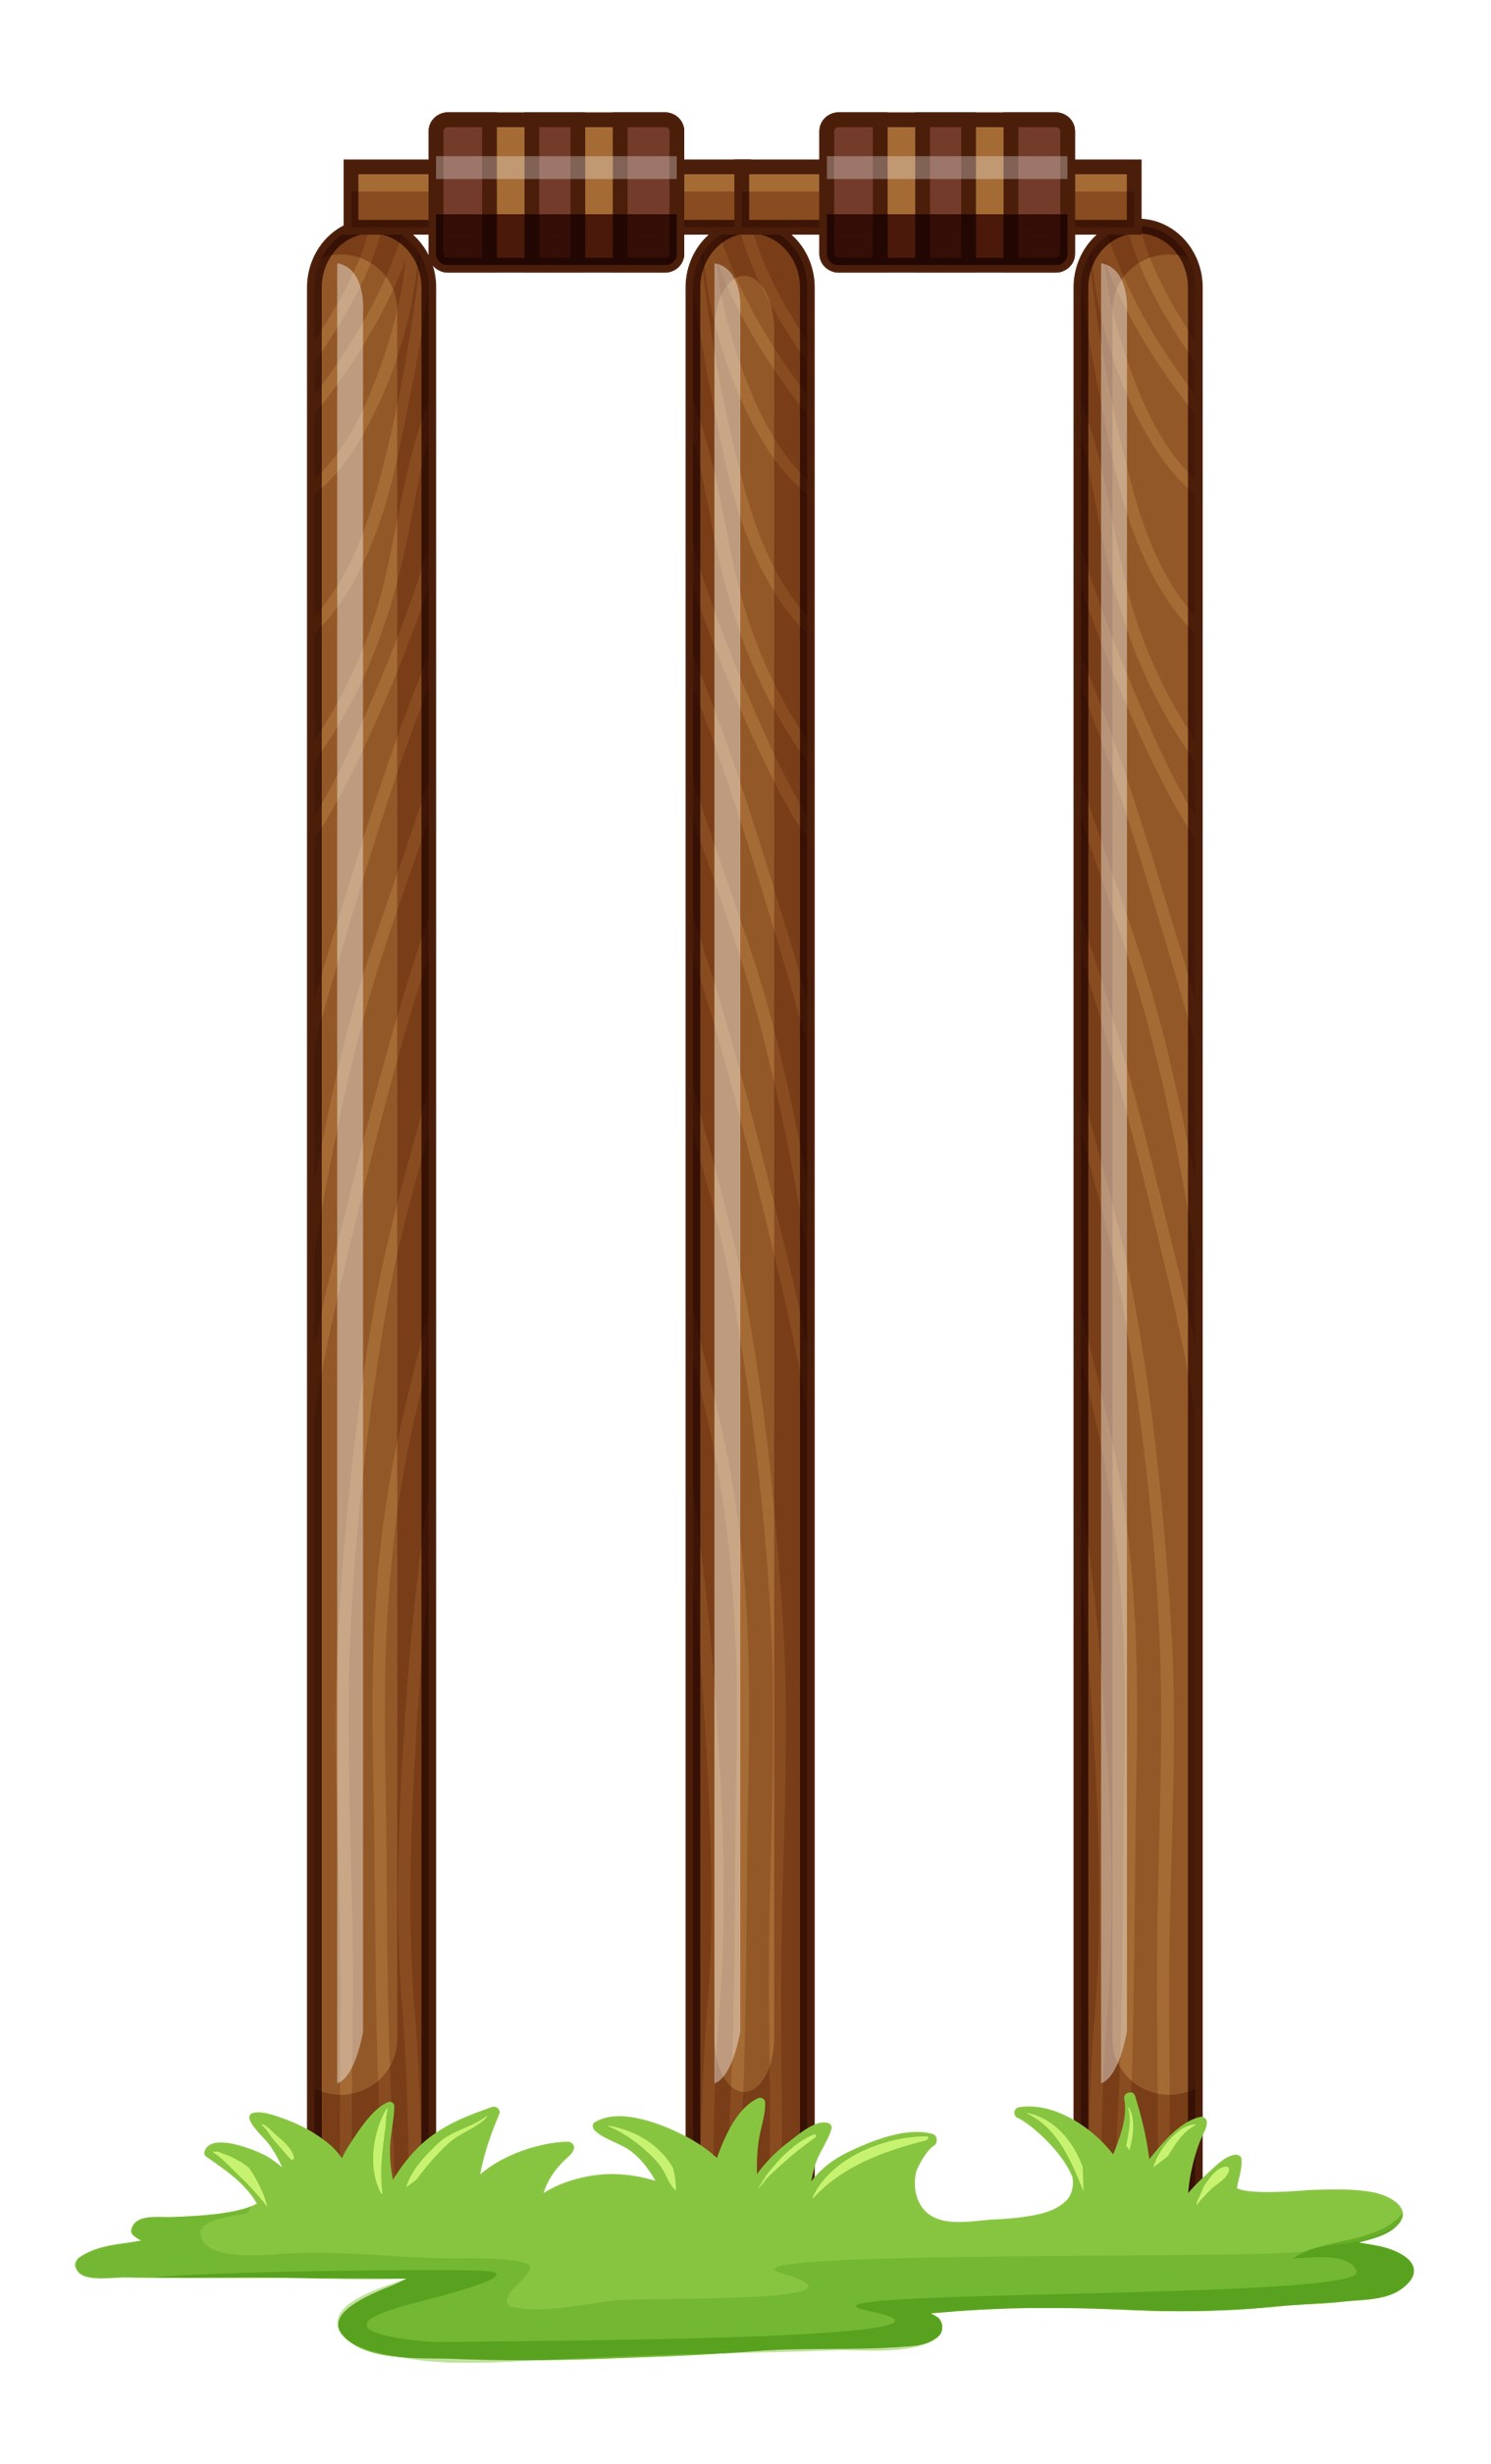 A cricket stump